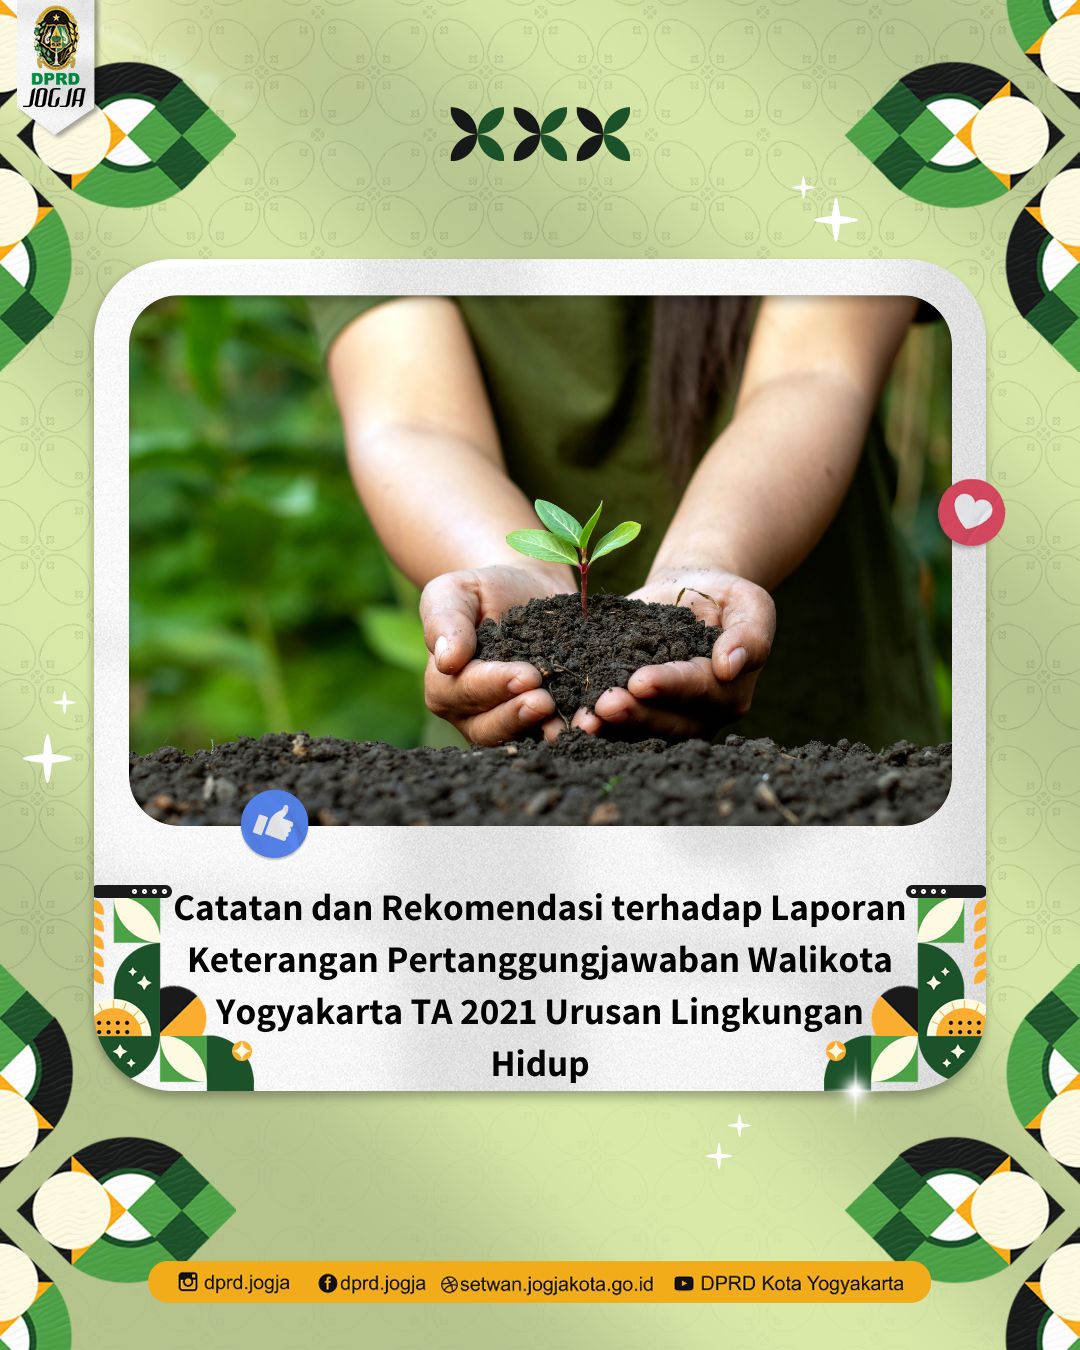 Catatan dan Rekomendasi terhadap Laporan Keterangan Pertanggungjawwaban Walikota Yogyakarta TA 2021 Urusan Lingkungan Hidup